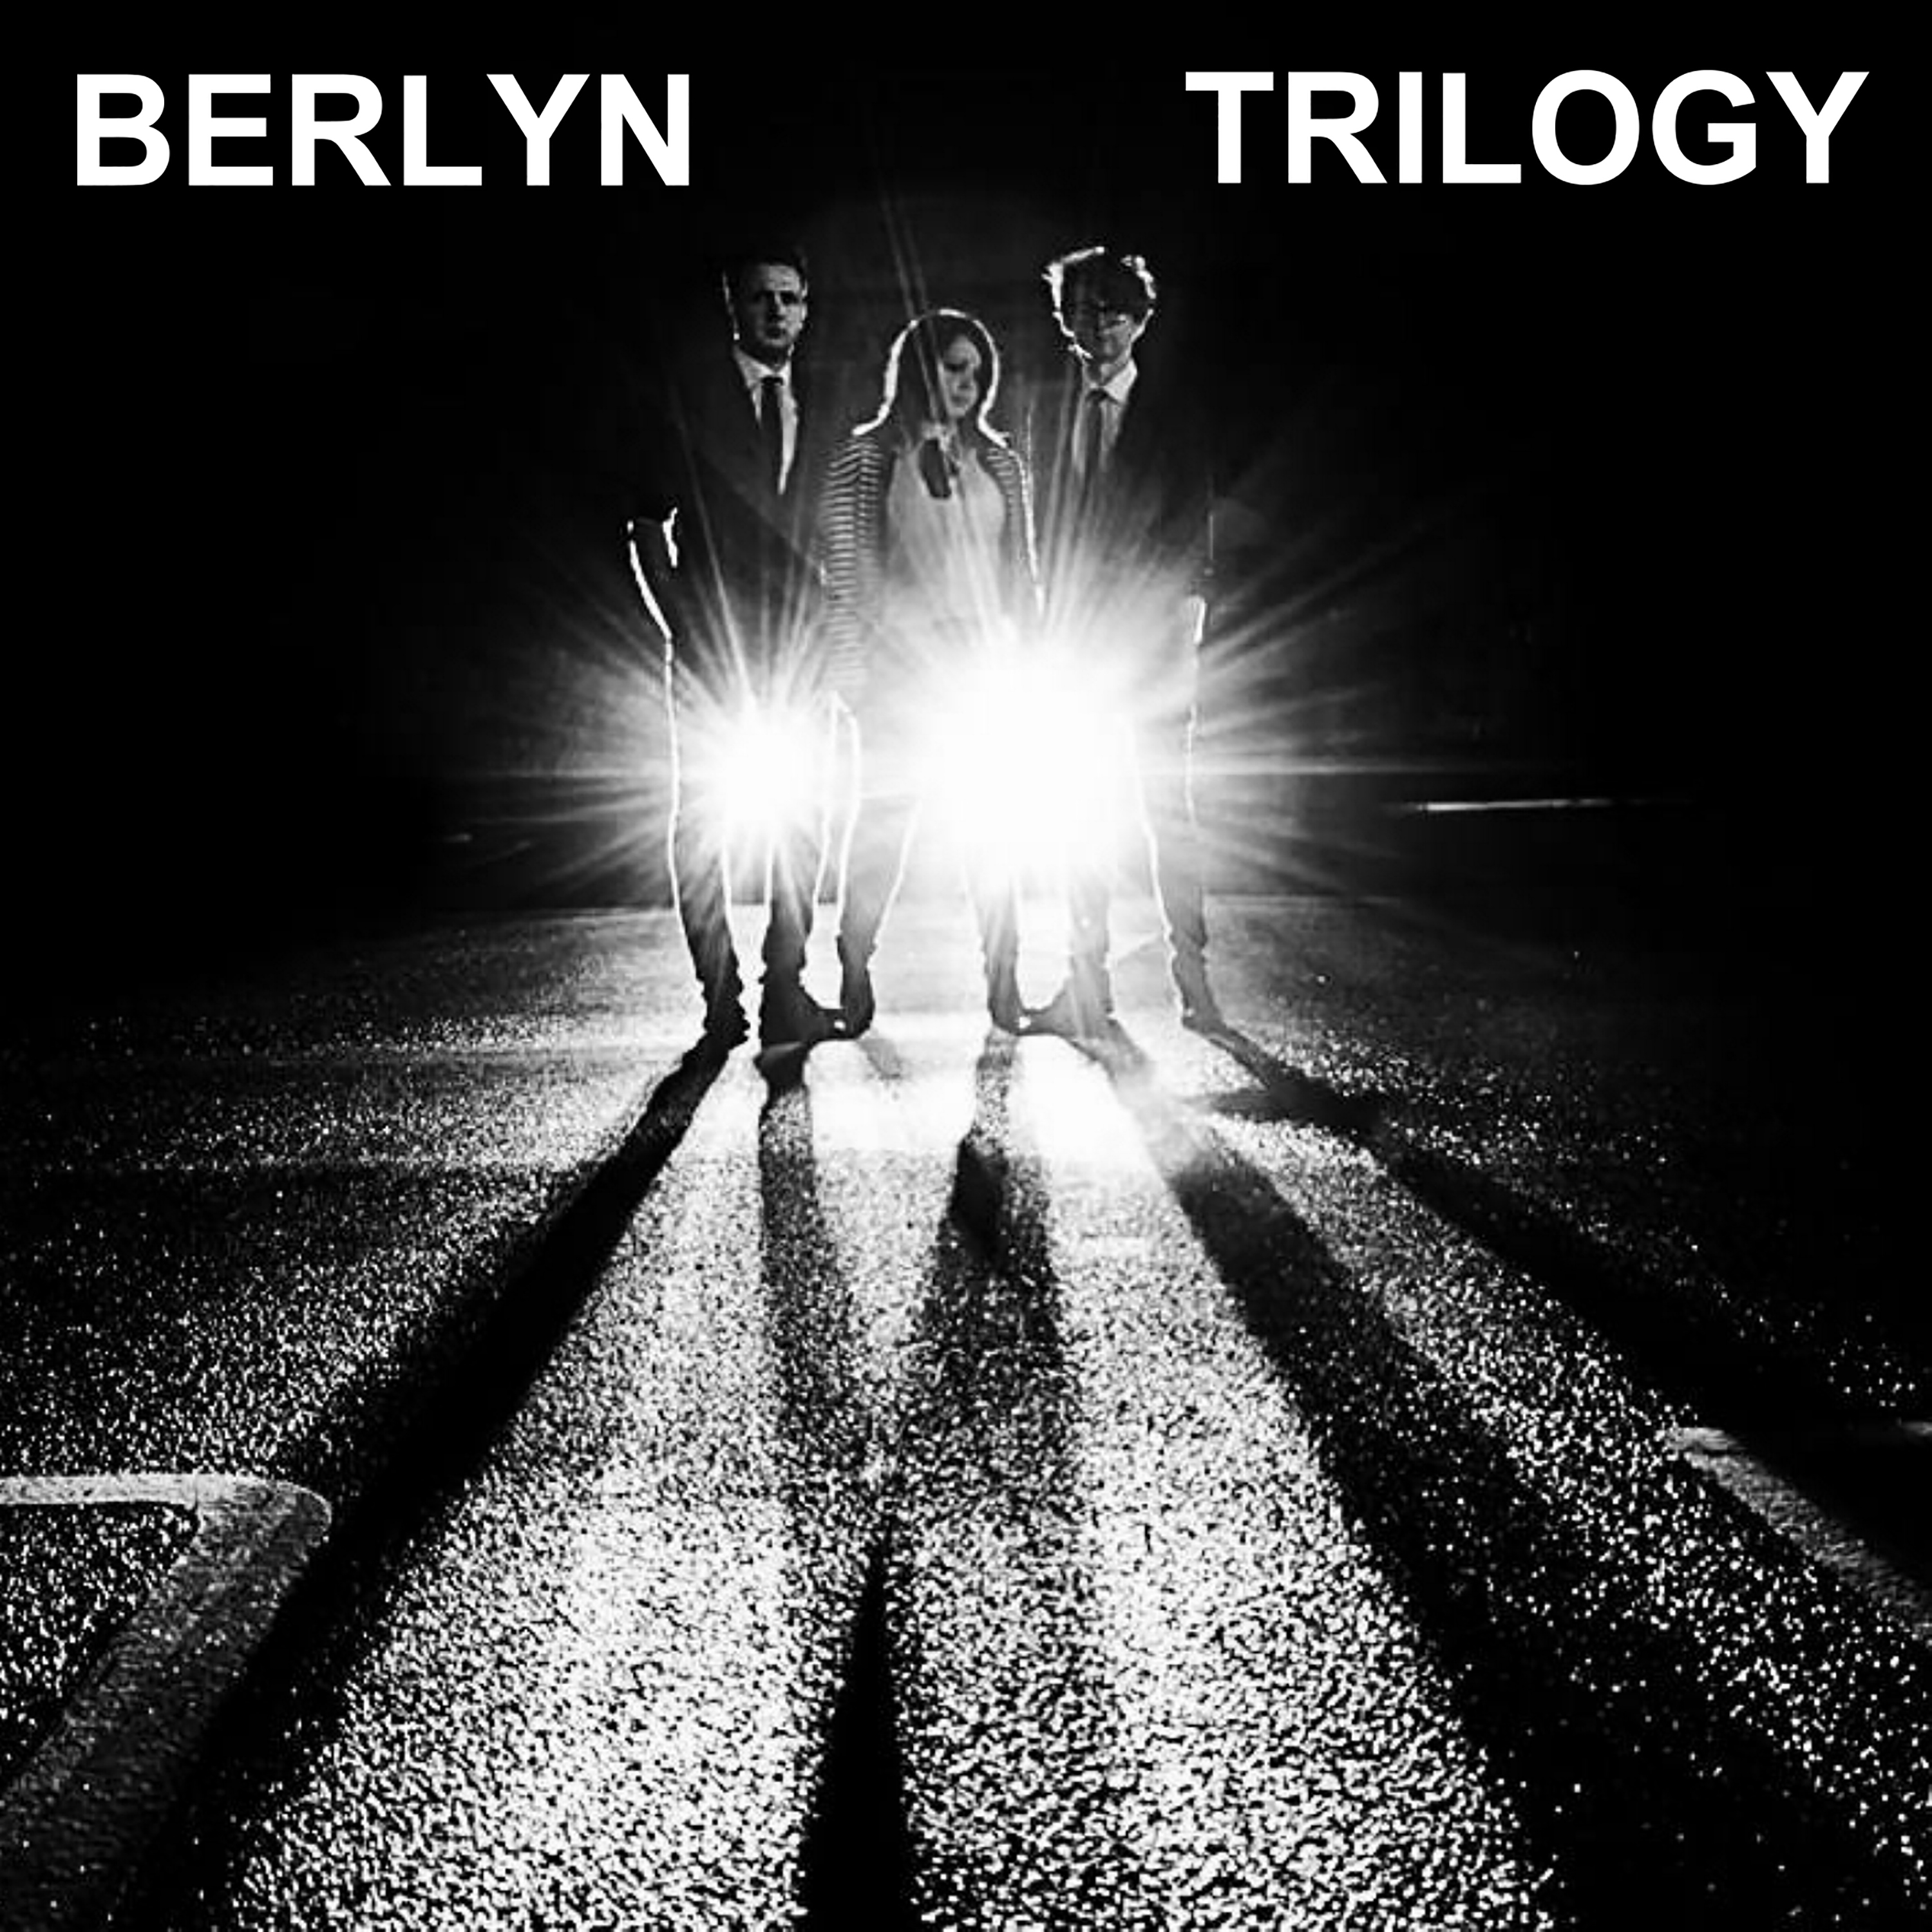 Berlyn Trilogy